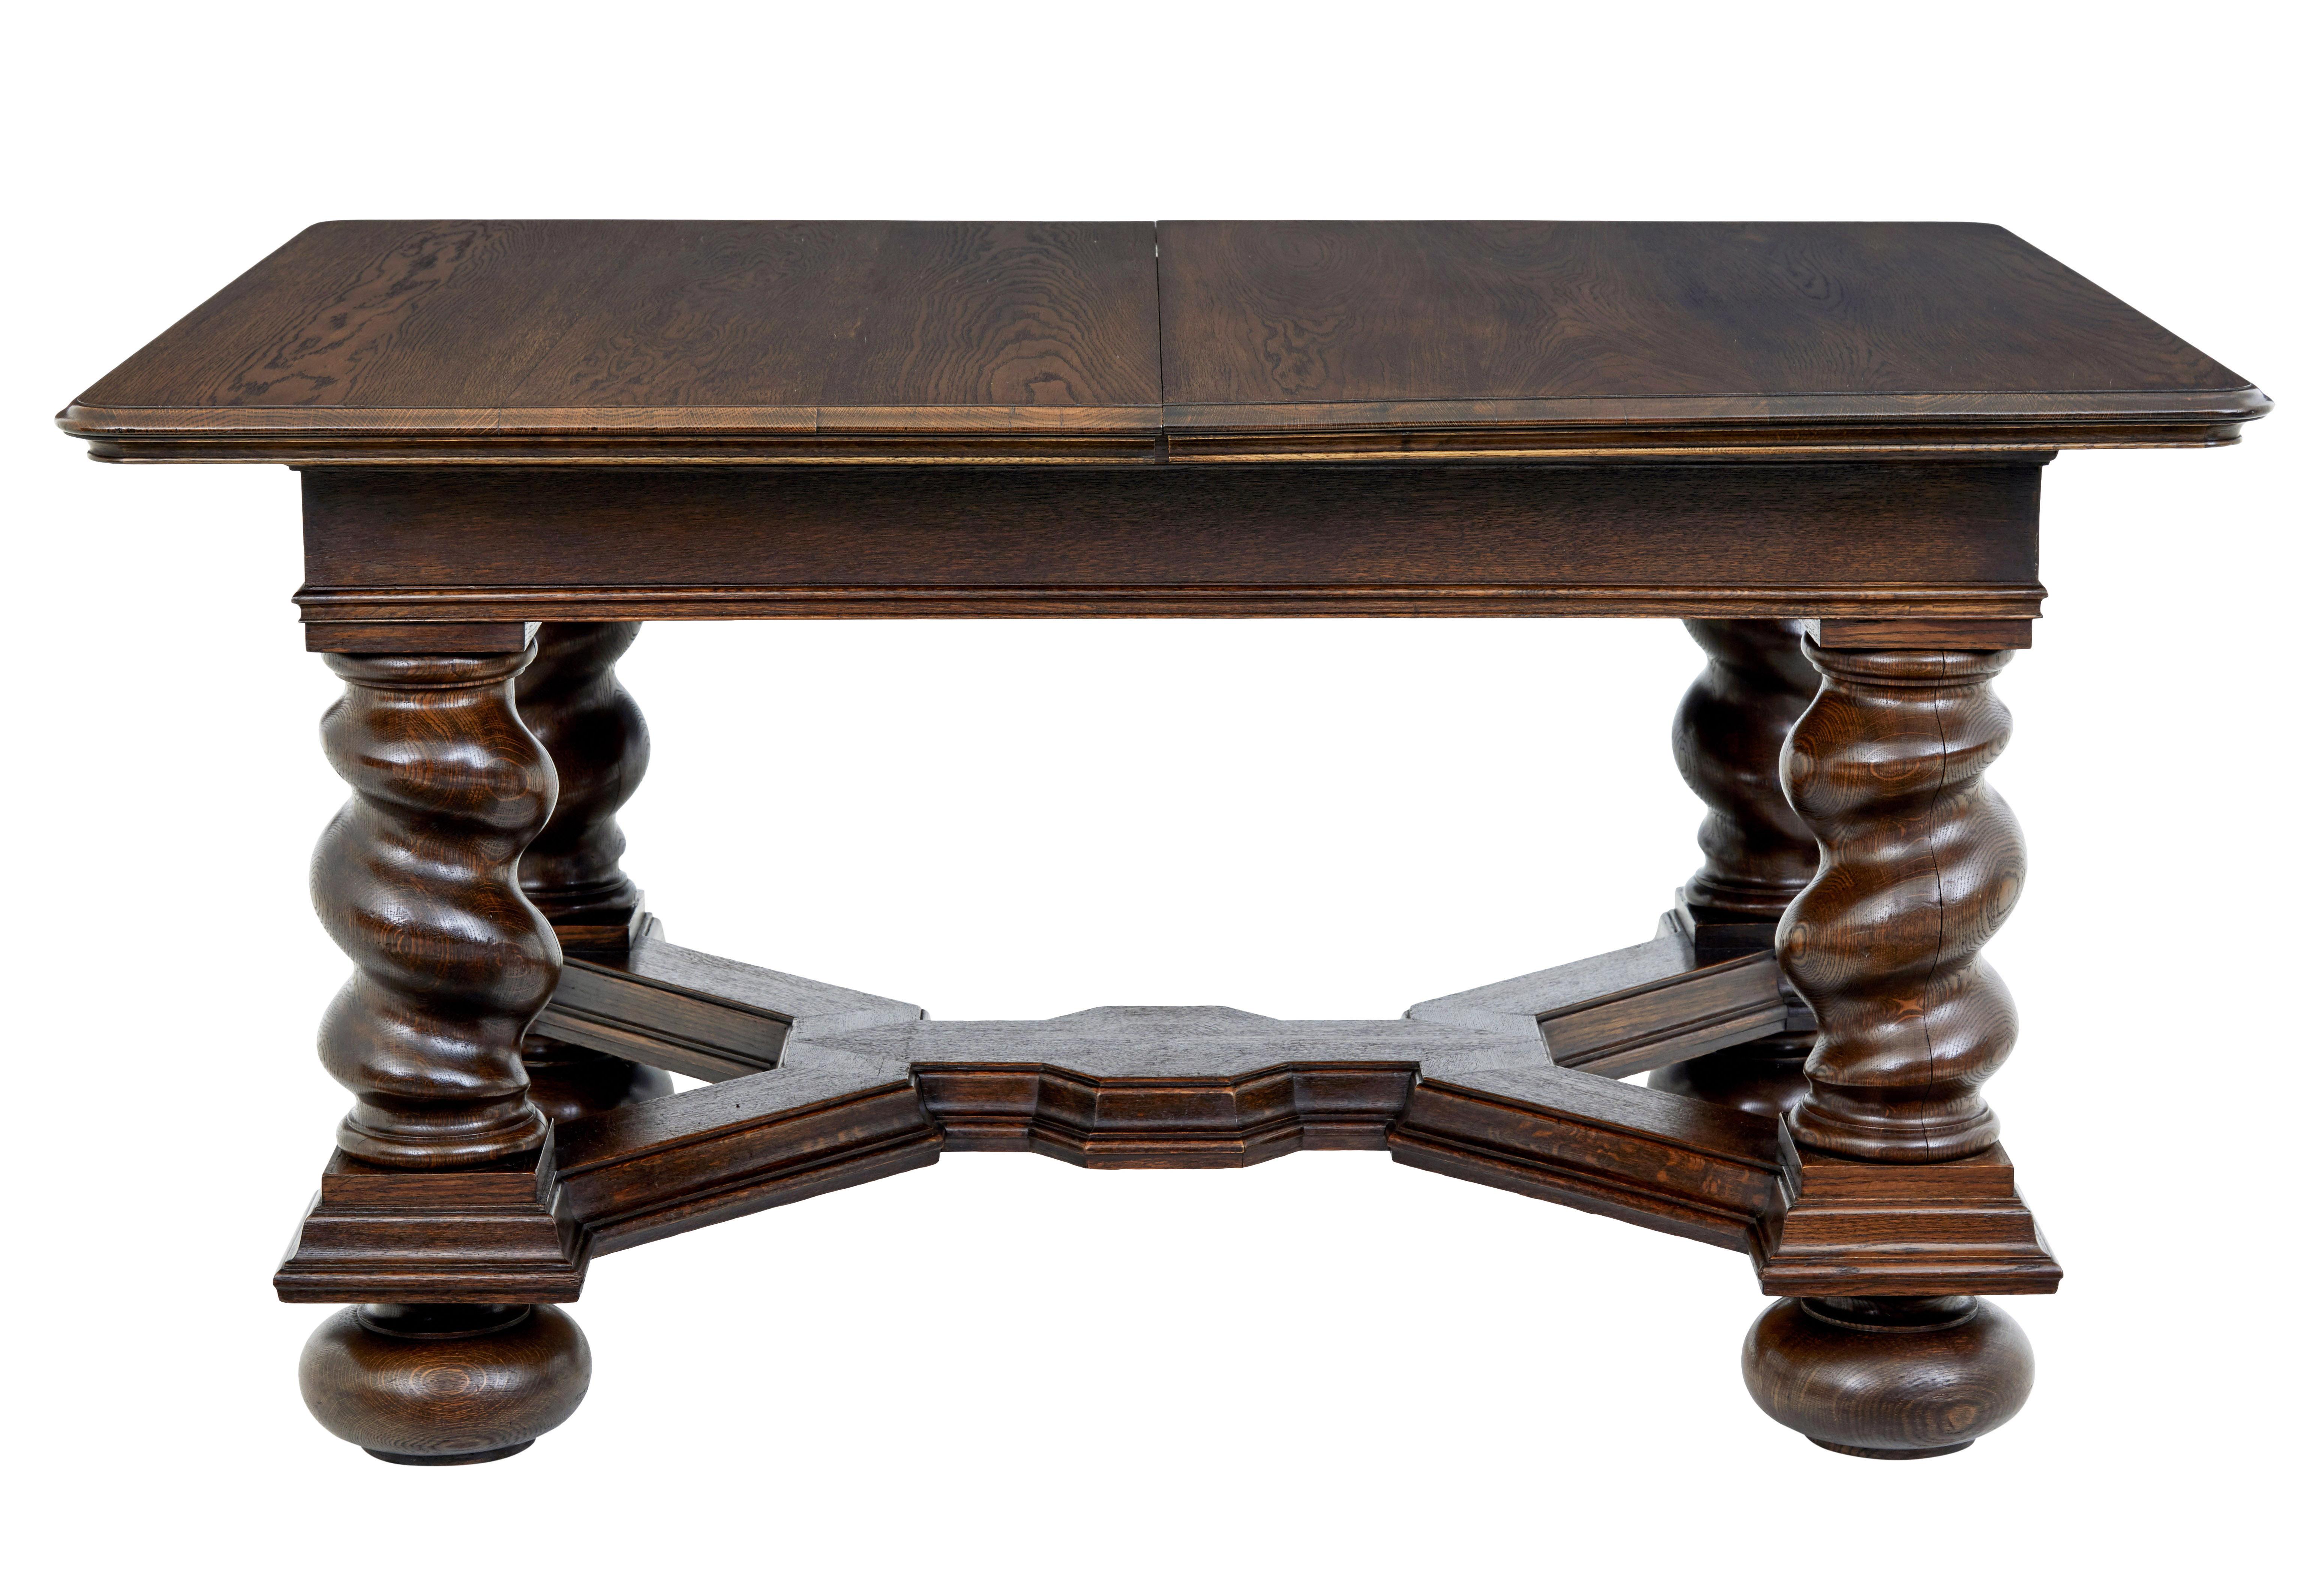 Ausziehbarer Esstisch aus Eiche, Anfang des 20. Jahrhunderts, um 1900.

Barocke Tischplatte mit Eichenfurnier, die auf einem massiven Sockel mit Gerstenkornbeinen steht, die durch eine mit Stuck verzierte Bahre verbunden sind.

Wird mit 3 späteren